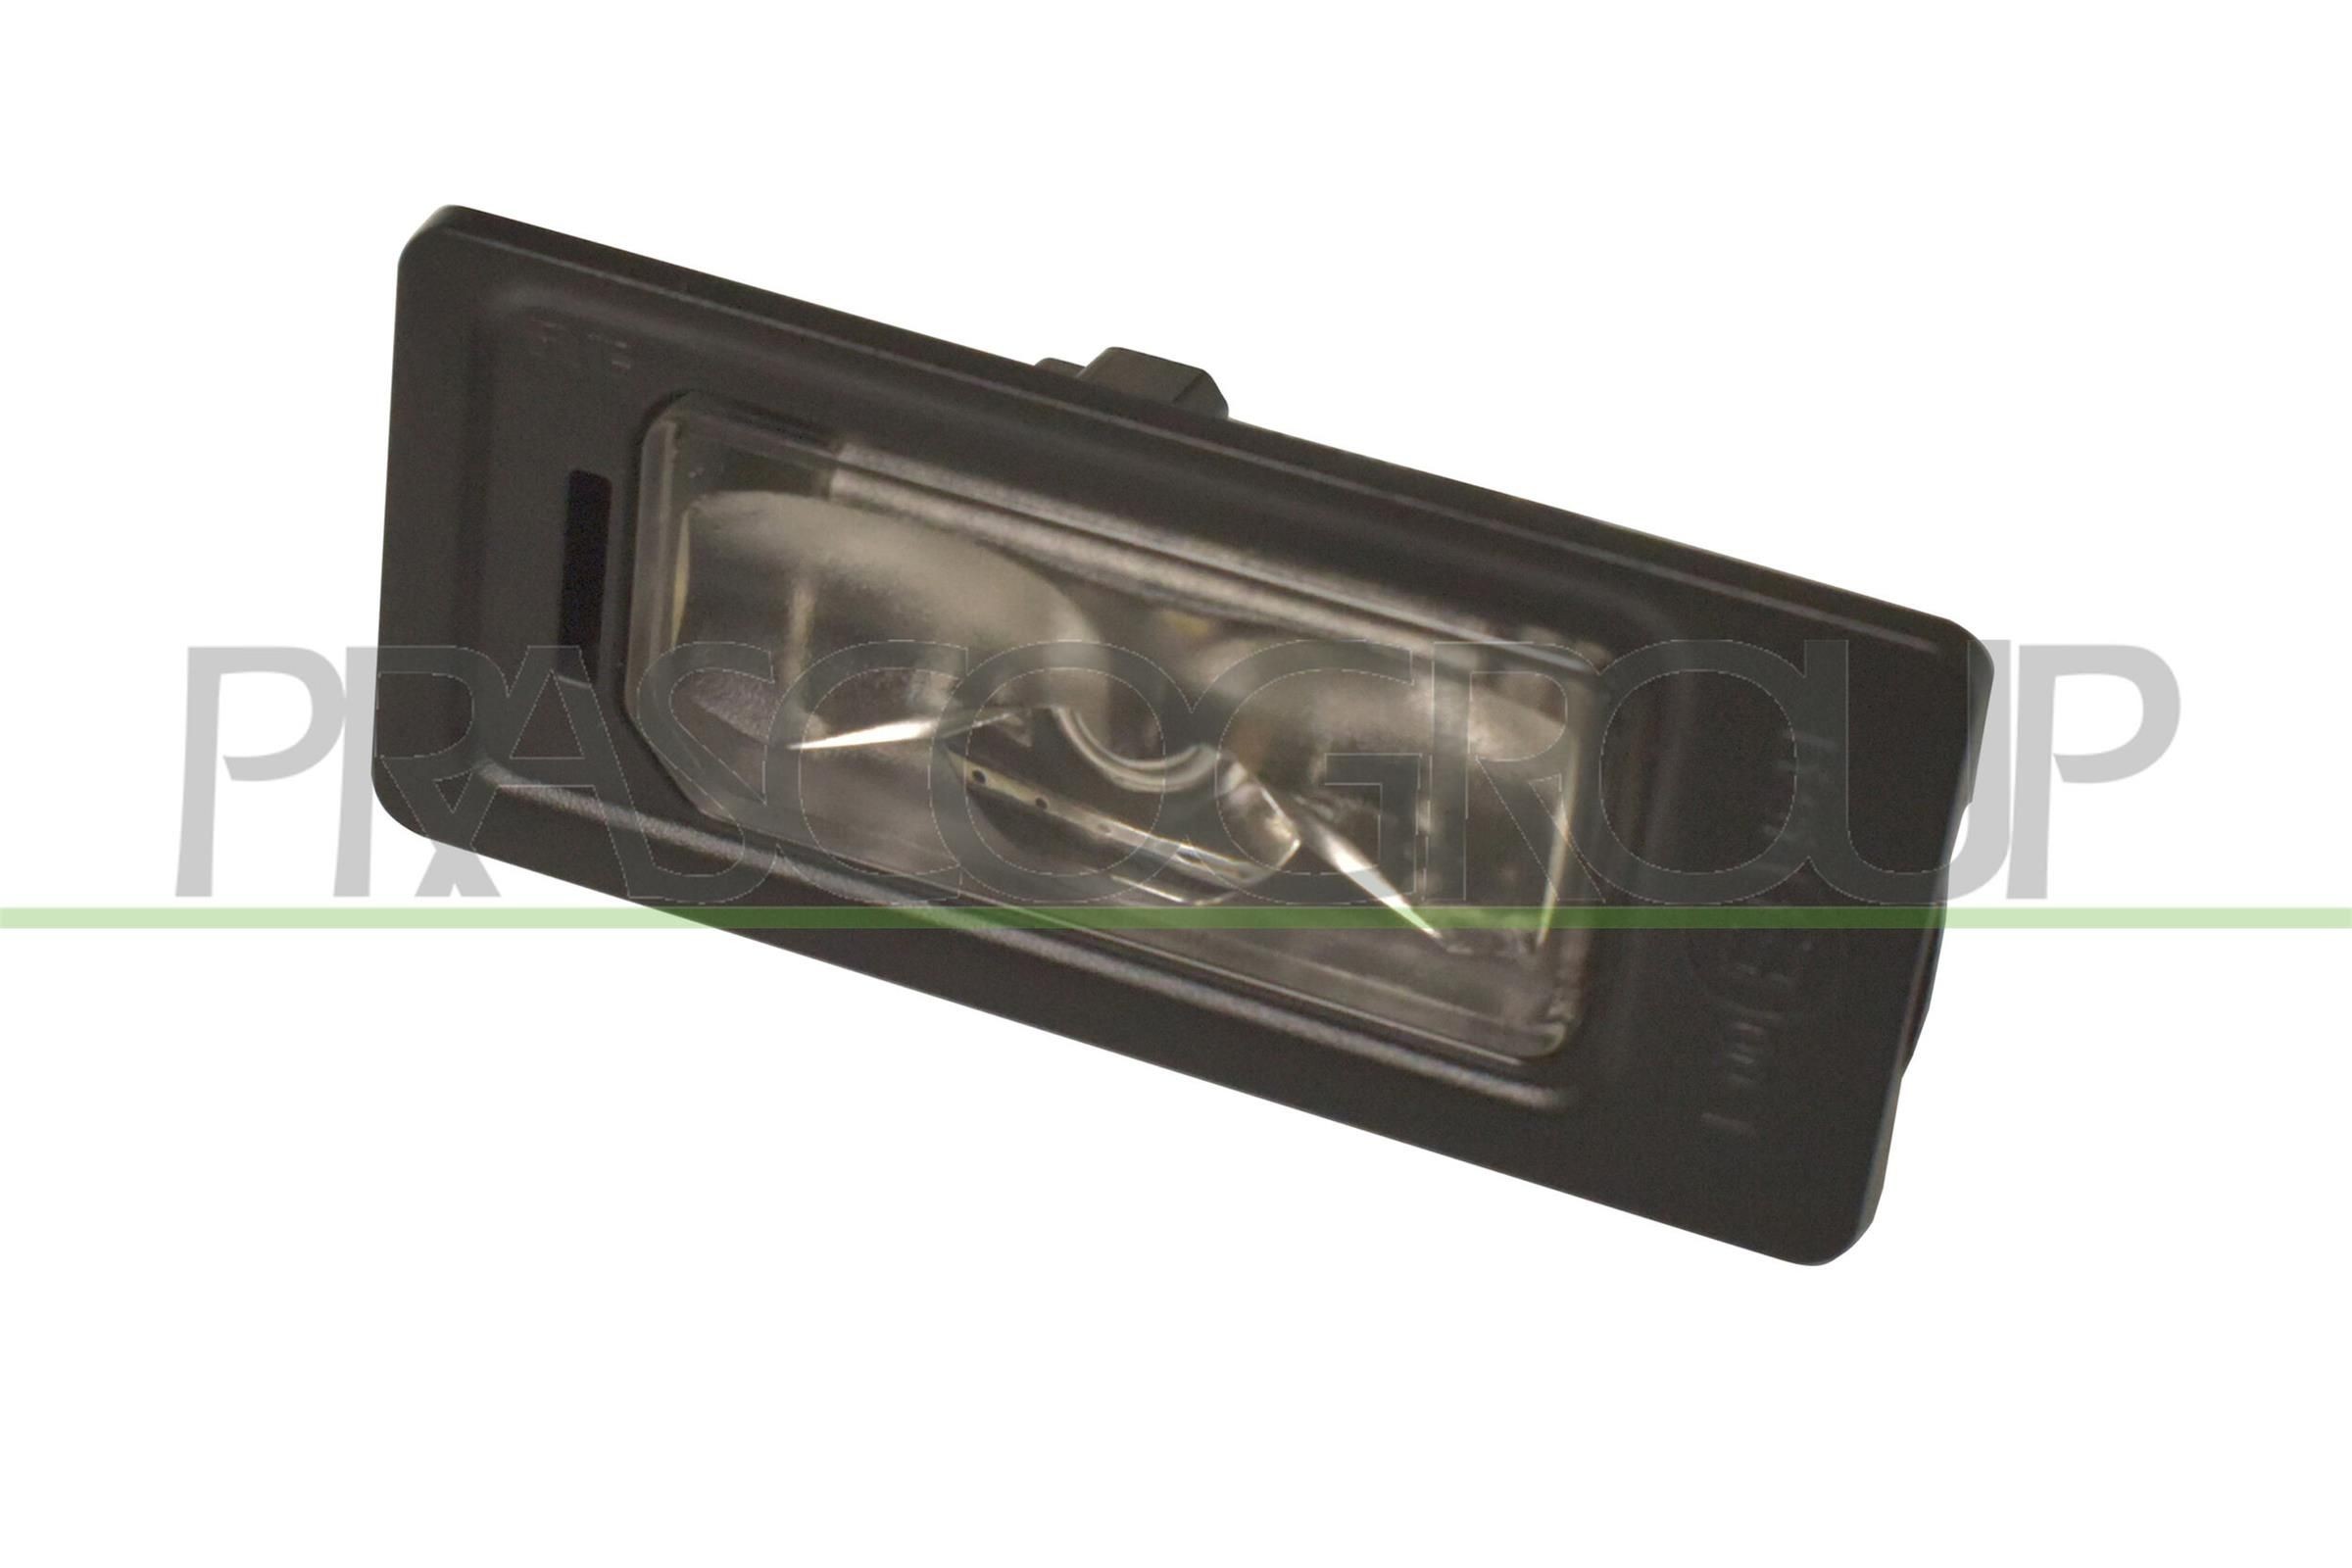 Kennzeichenbeleuchtung für Passat 3g5 LED und Halogen kaufen - Original  Qualität und günstige Preise bei AUTODOC